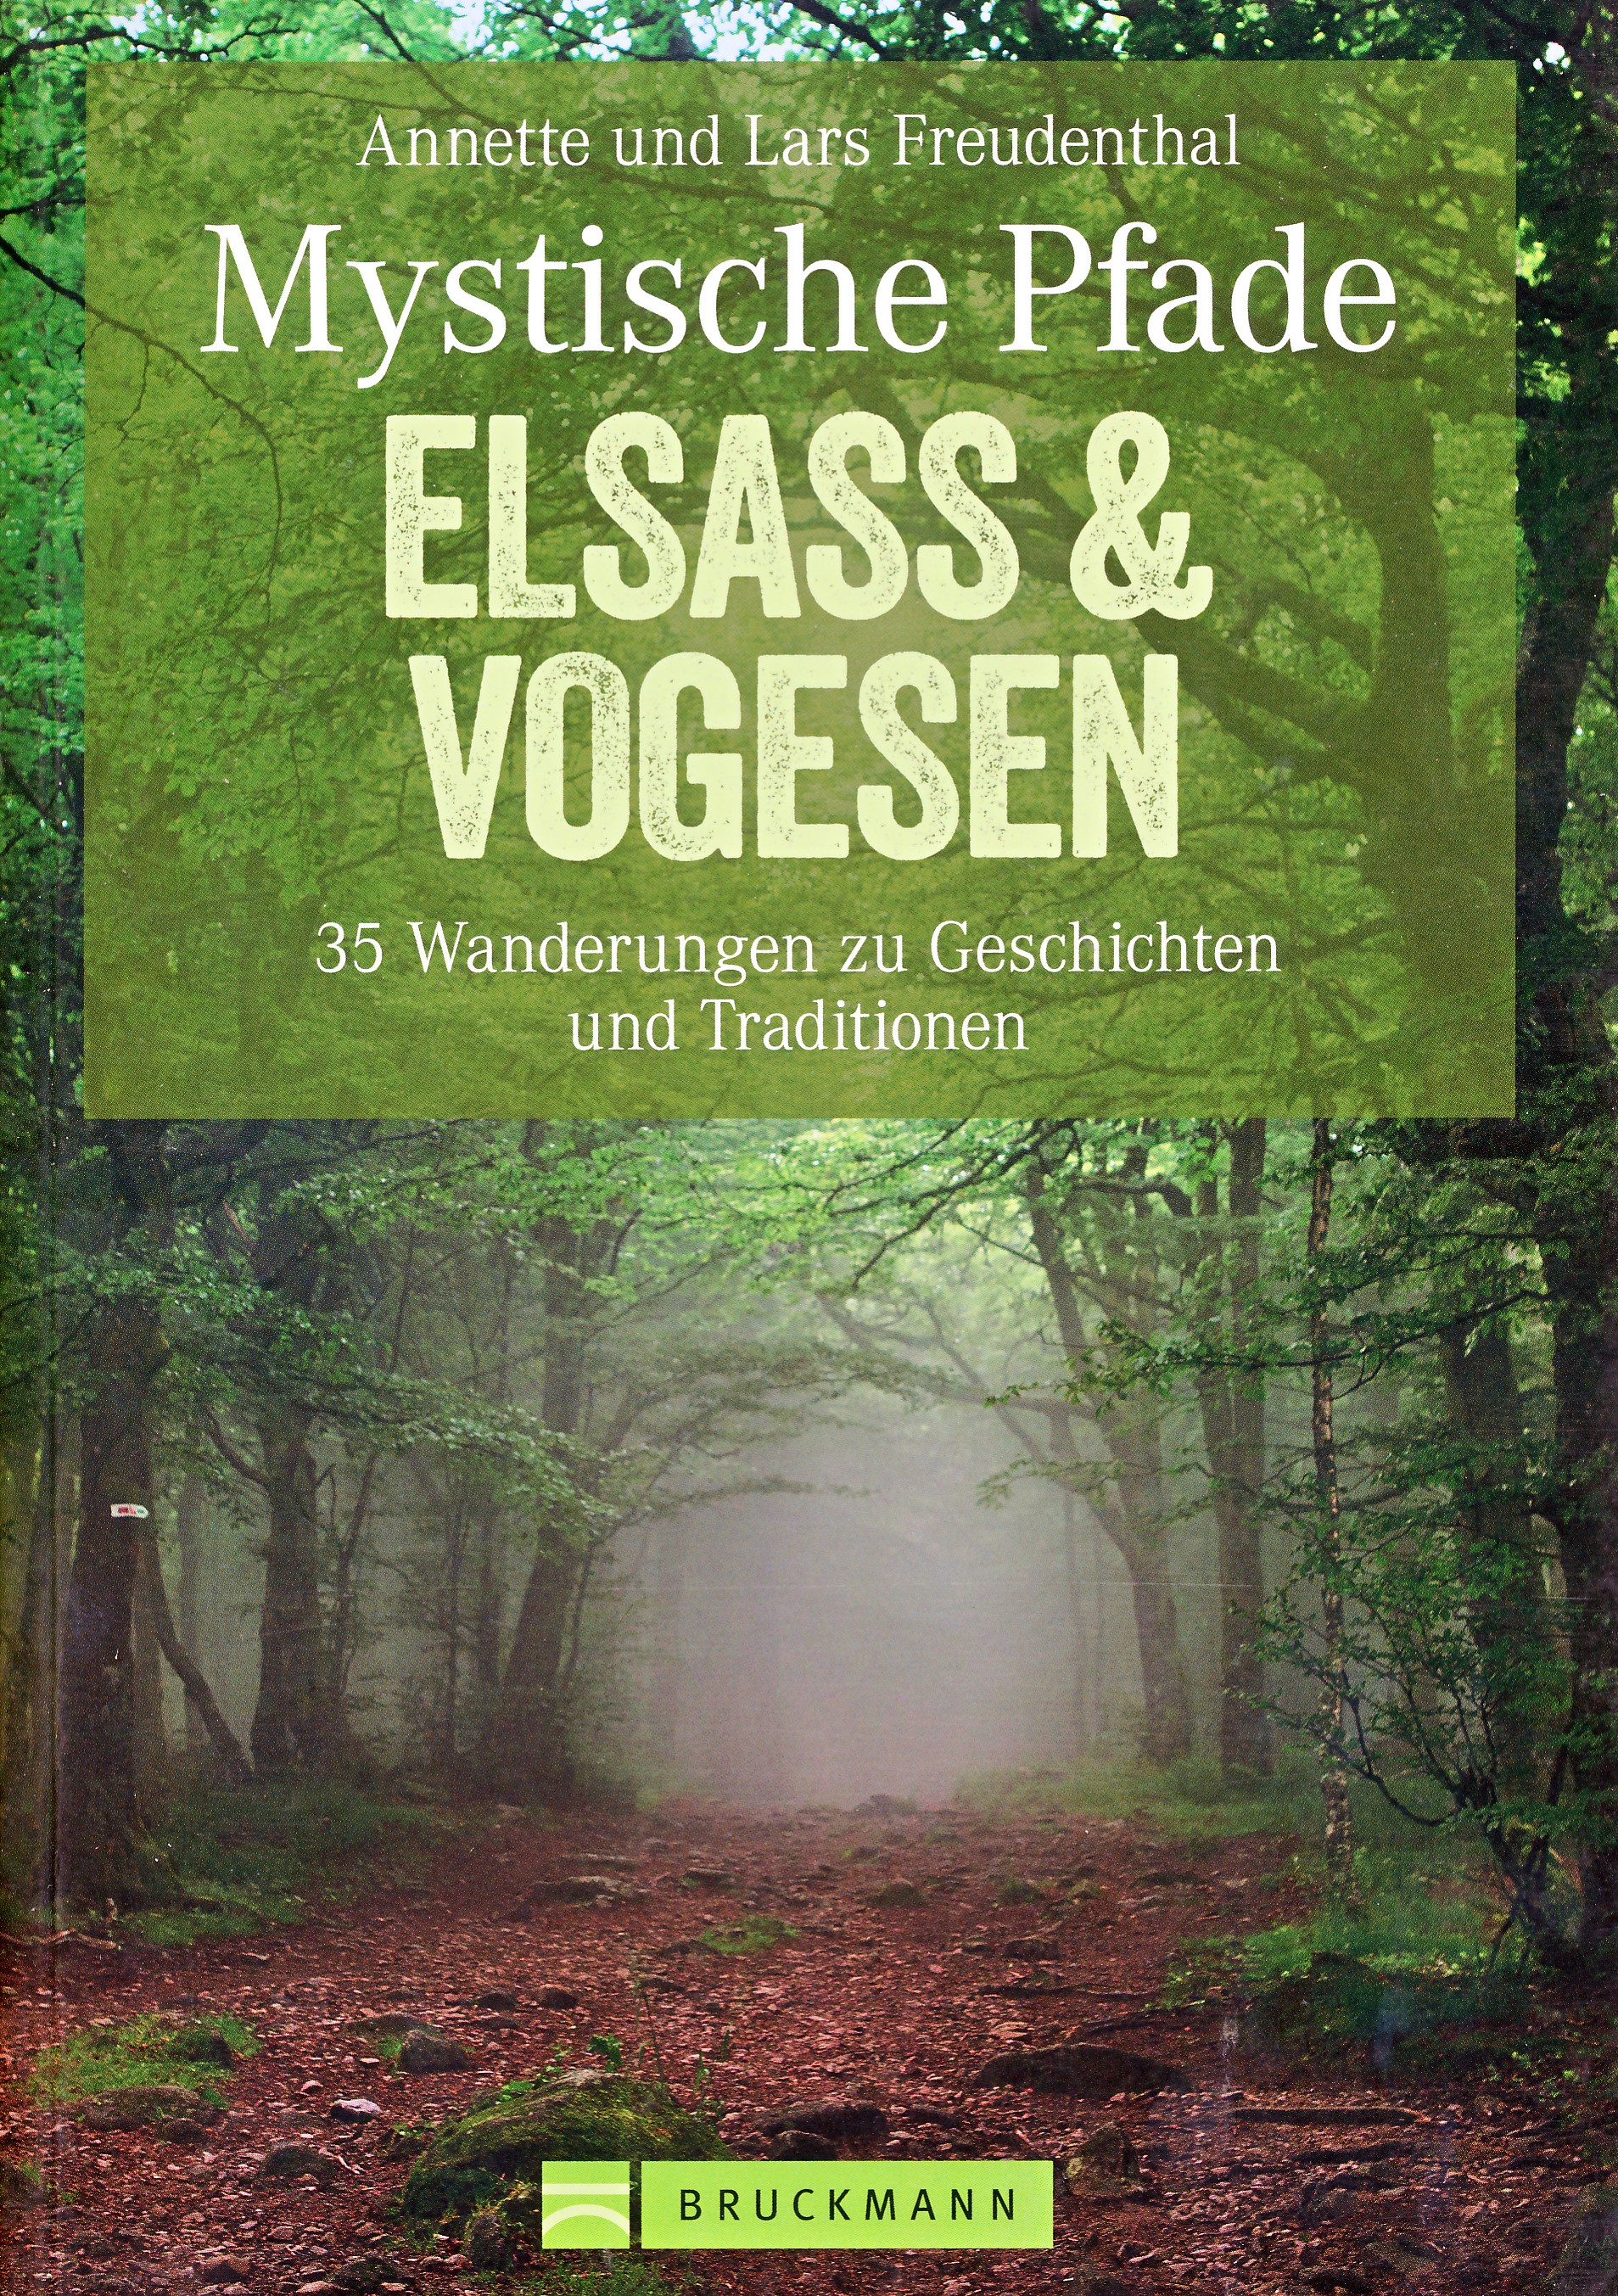 Online bestellen: Wandelgids Mystische Pfade Elsass & Vogesen - Elzas en Vogezen | Bruckmann Verlag